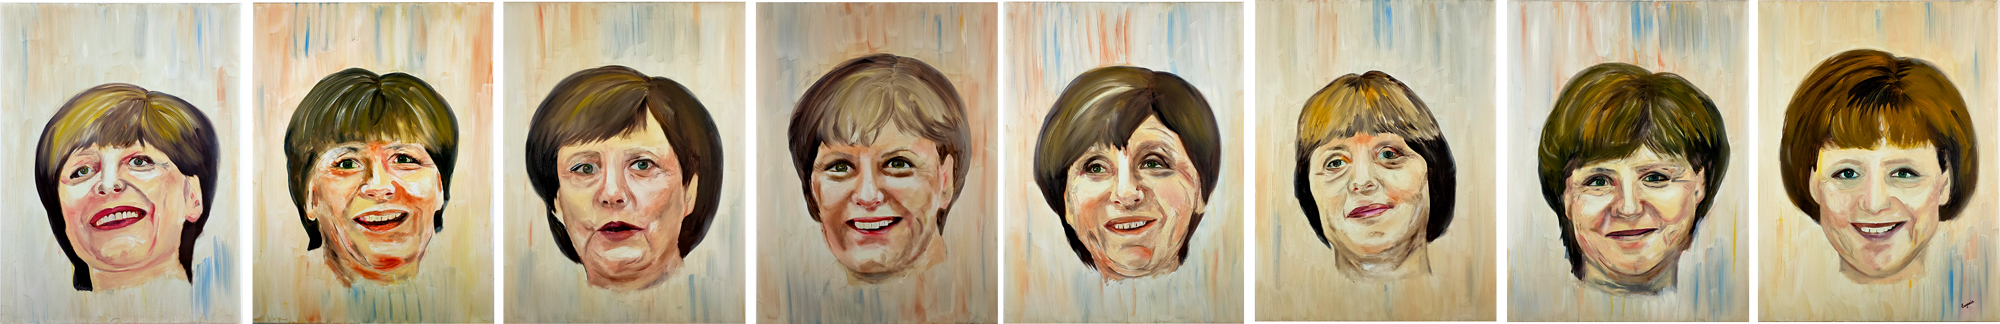 Merkel Series